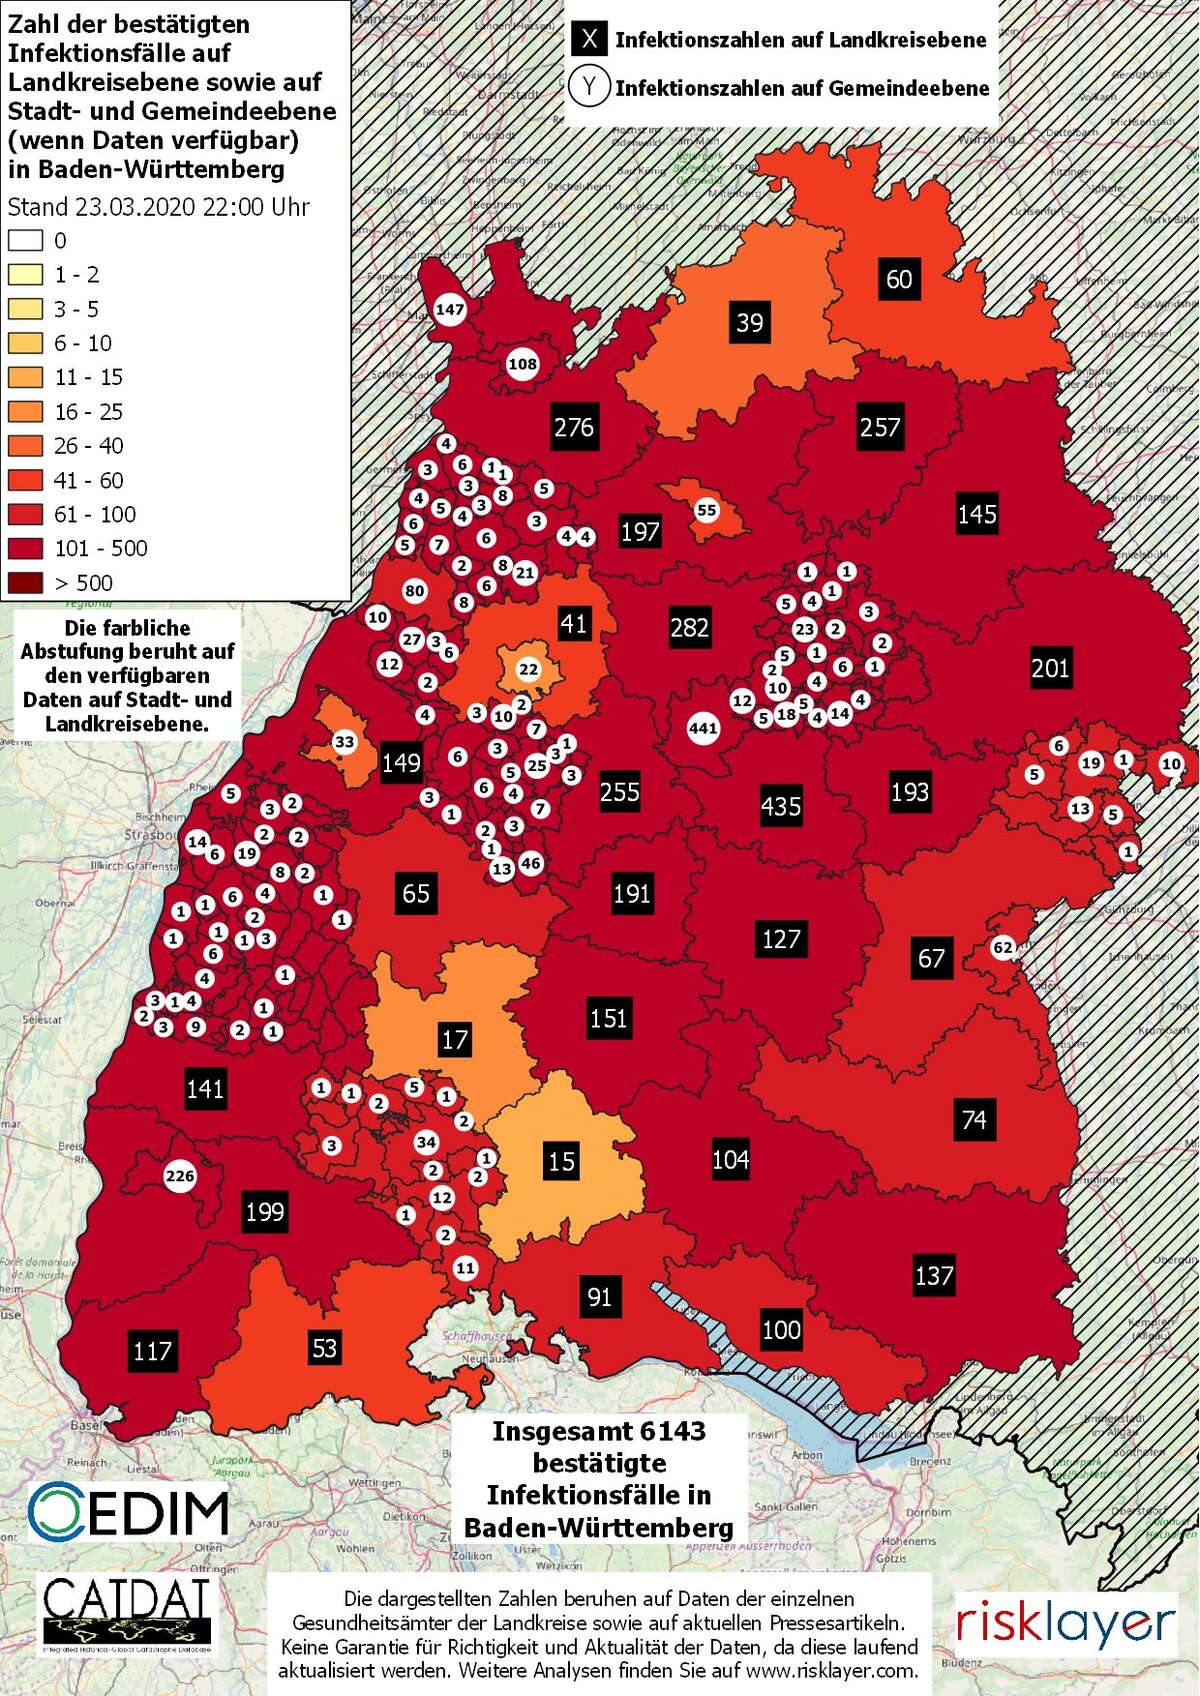 Überblick der Corona-Infektionen auf Landkreisebene sowie auf Stadt- und Gemeindeebene in Baden-Württemberg. (Bild: Johannes Brand, KIT)